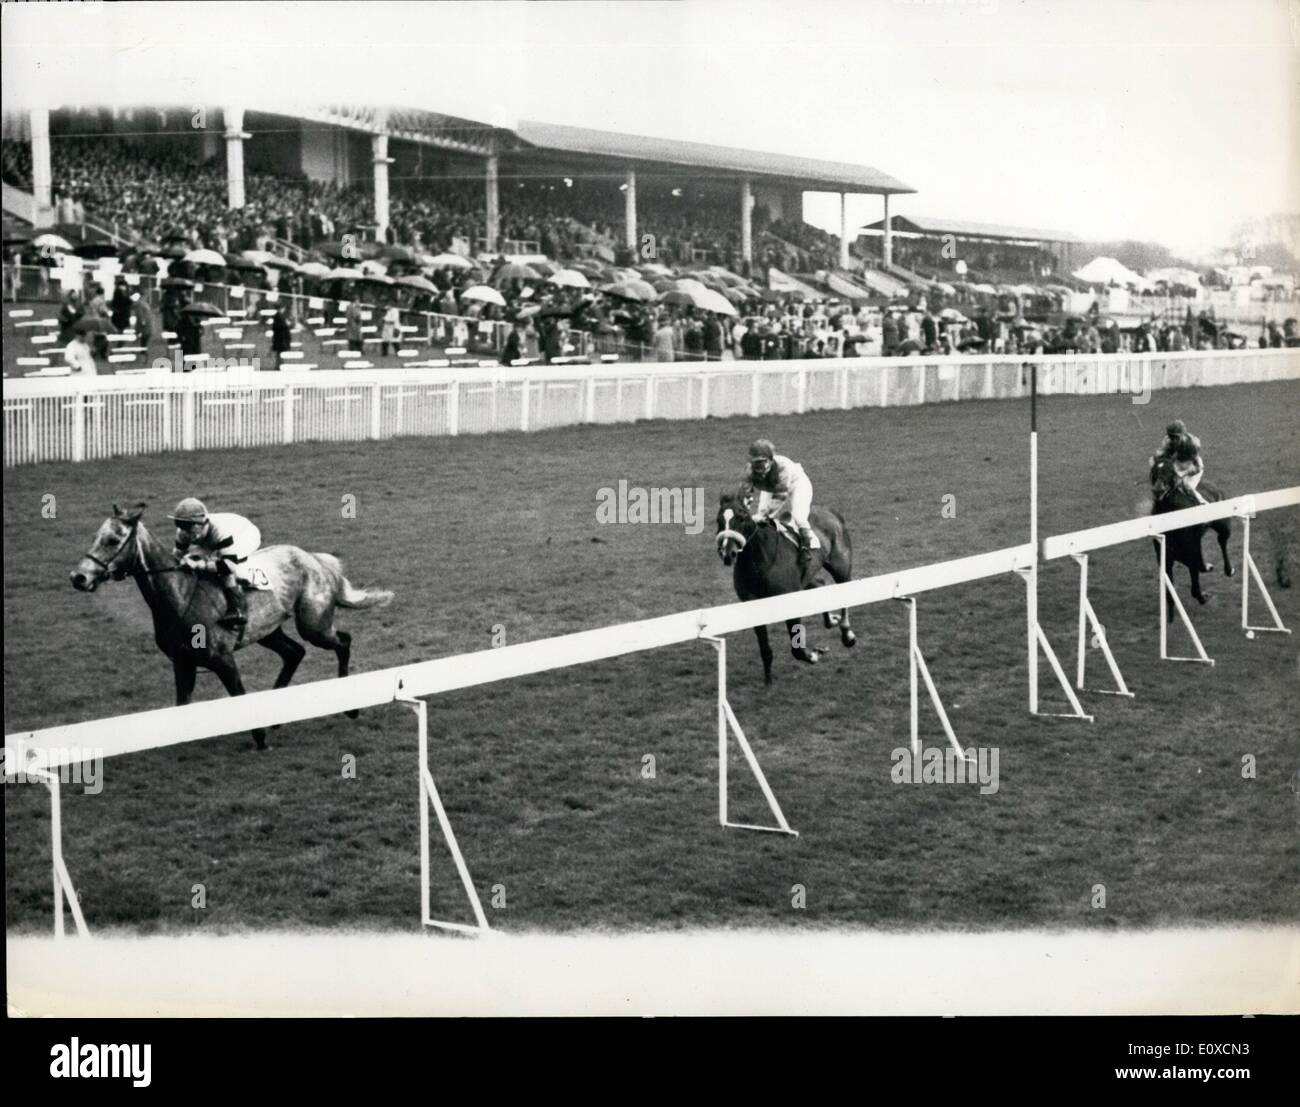 4. April 1966 - Racing in Epsom große Metropolitan: Foto zeigt das Ende der großen Metropolitan Handicap, in Epsom heute - gewonnen durch Cullen (F. Nesse); mit Gypsy Refrain (m.l. Thomas), 2., und Oberst Imp (C. Gissing), 3. Platz. Stockfoto